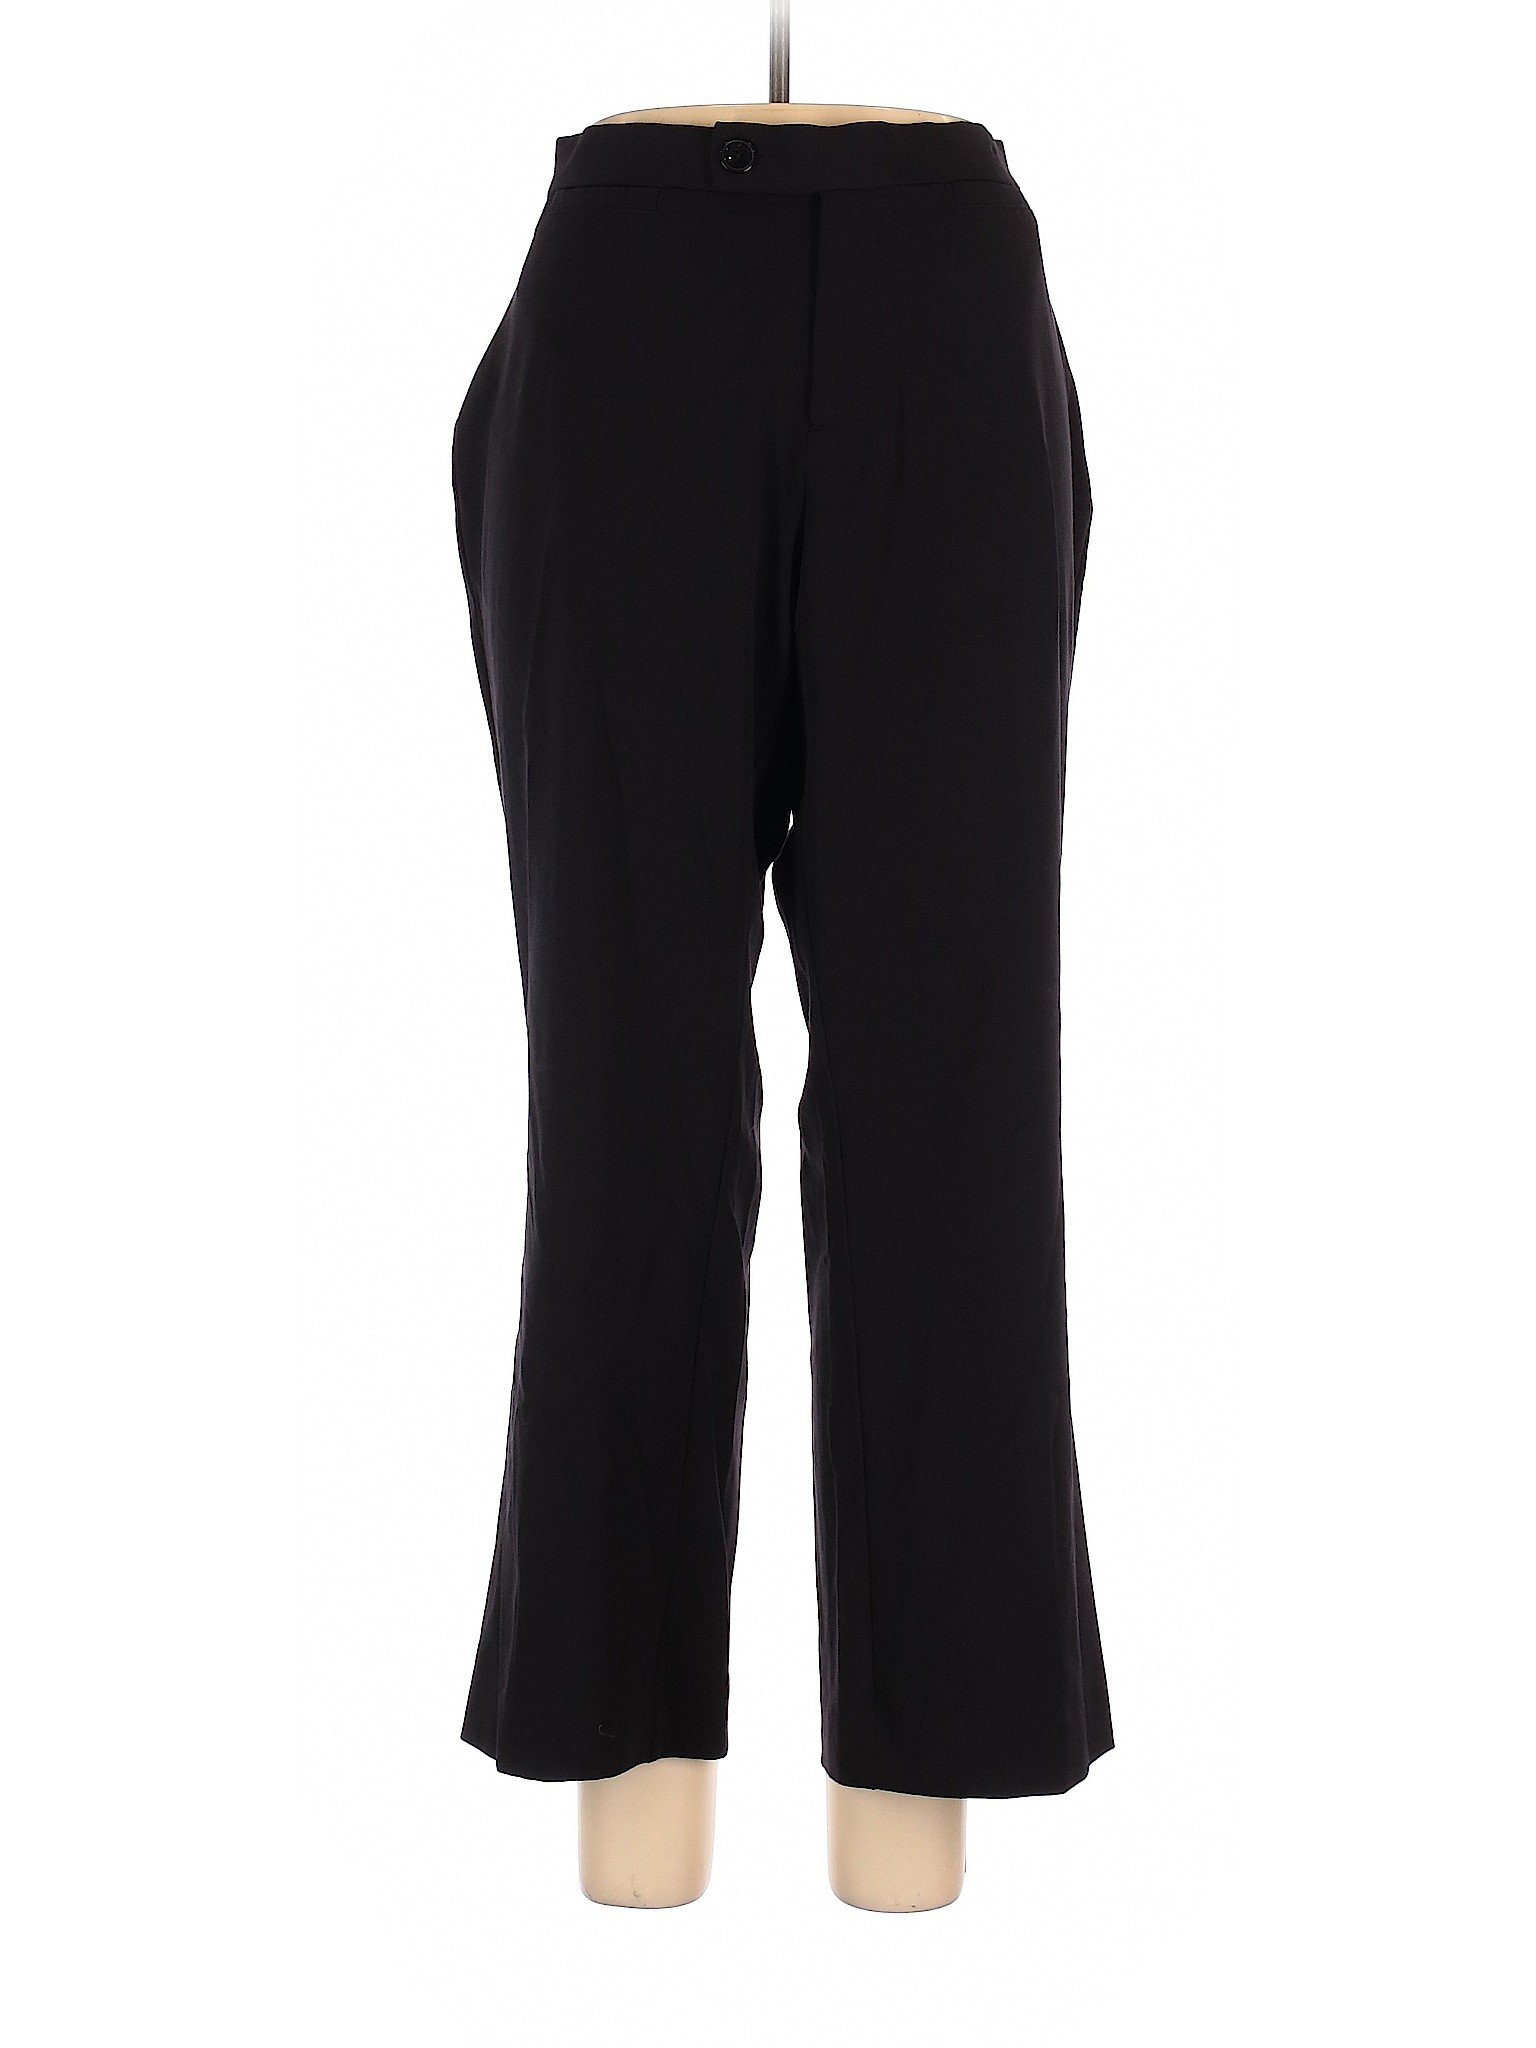 Cj Banks Women Black Dress Pants 16 | eBay